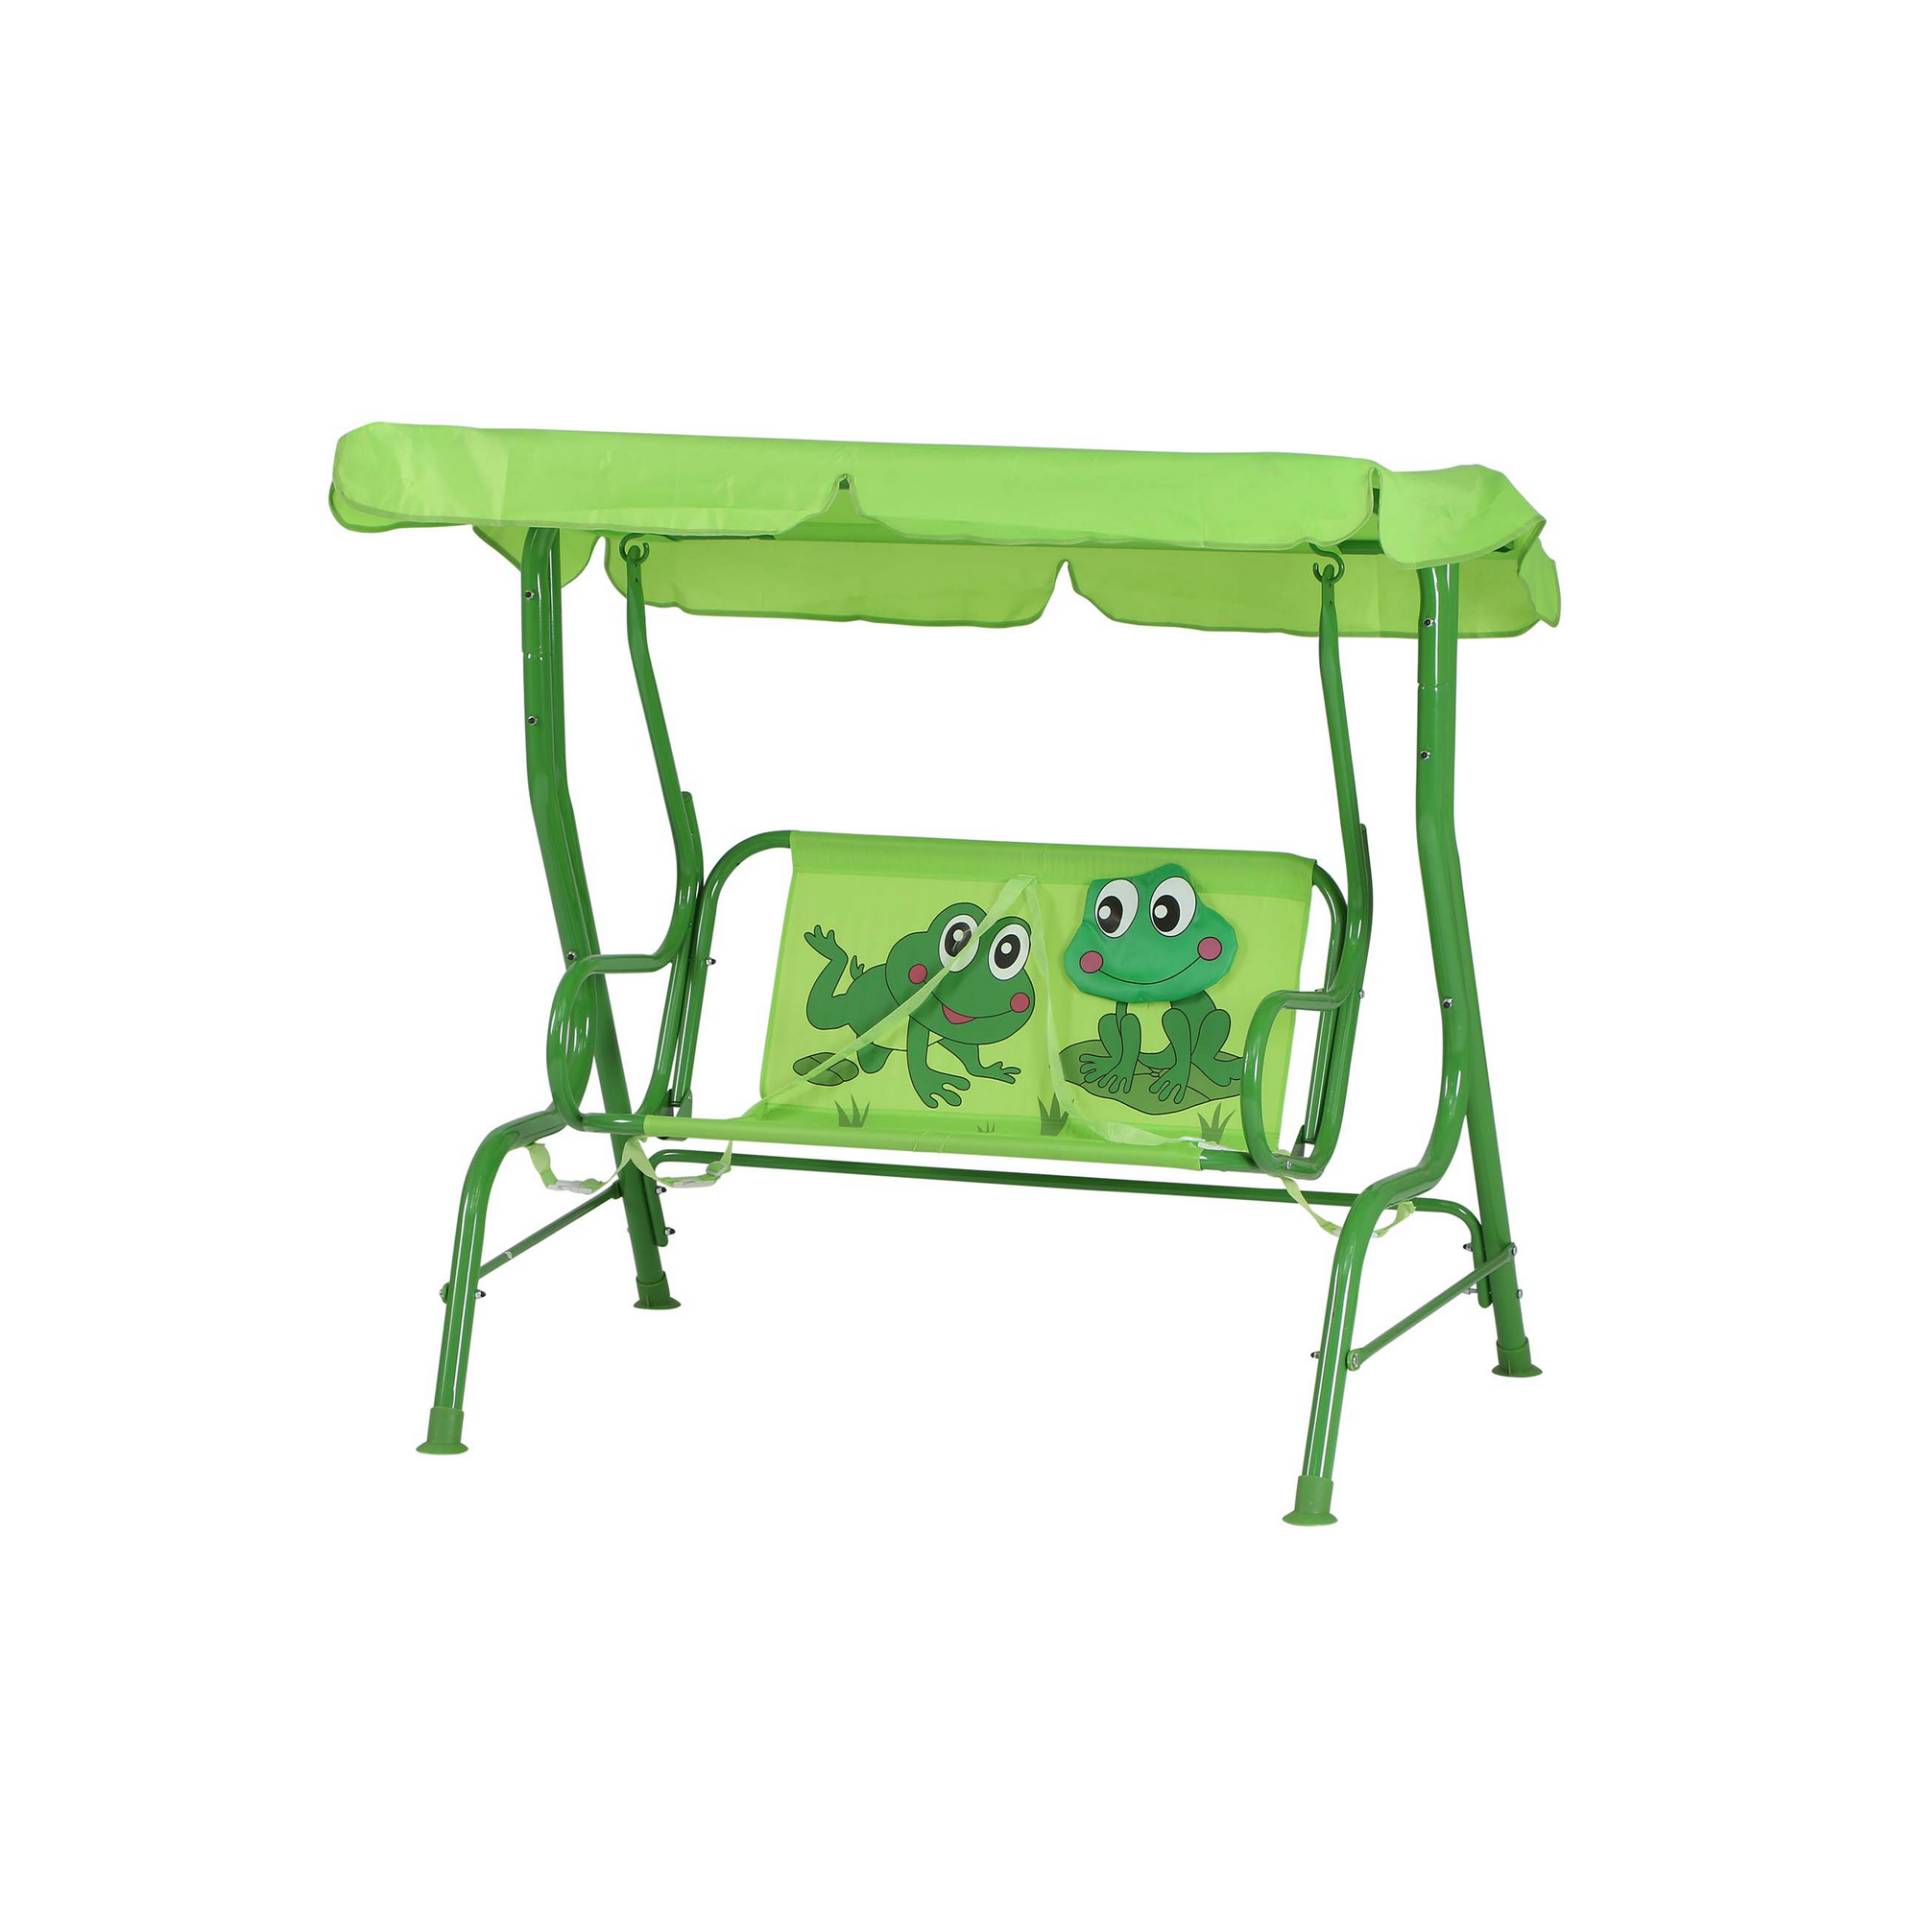 Siena Garden Kinderschaukel 'Froggy' grün 75 x 115 x 118 cm von SIENA GARDEN